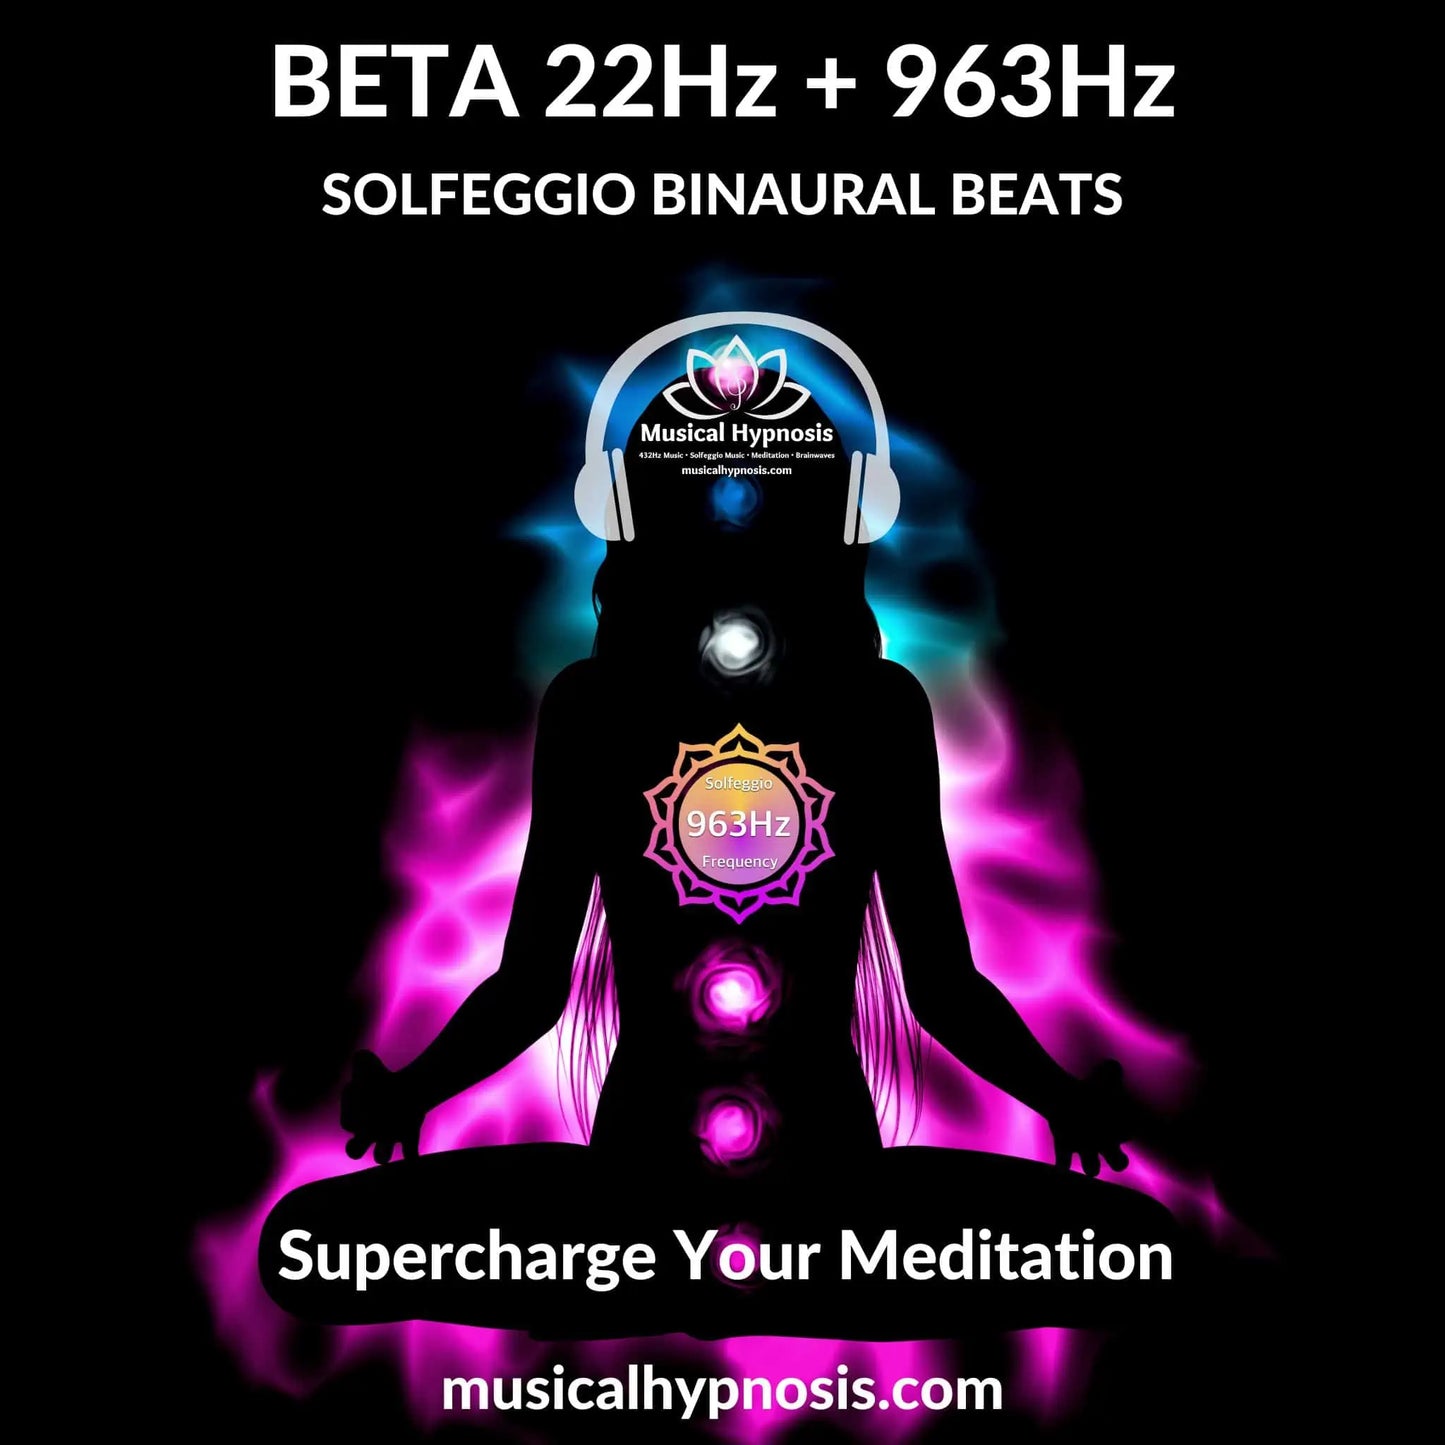 Beta 22Hz and 963Hz Solfeggio Binaural Beats | 30 minutes